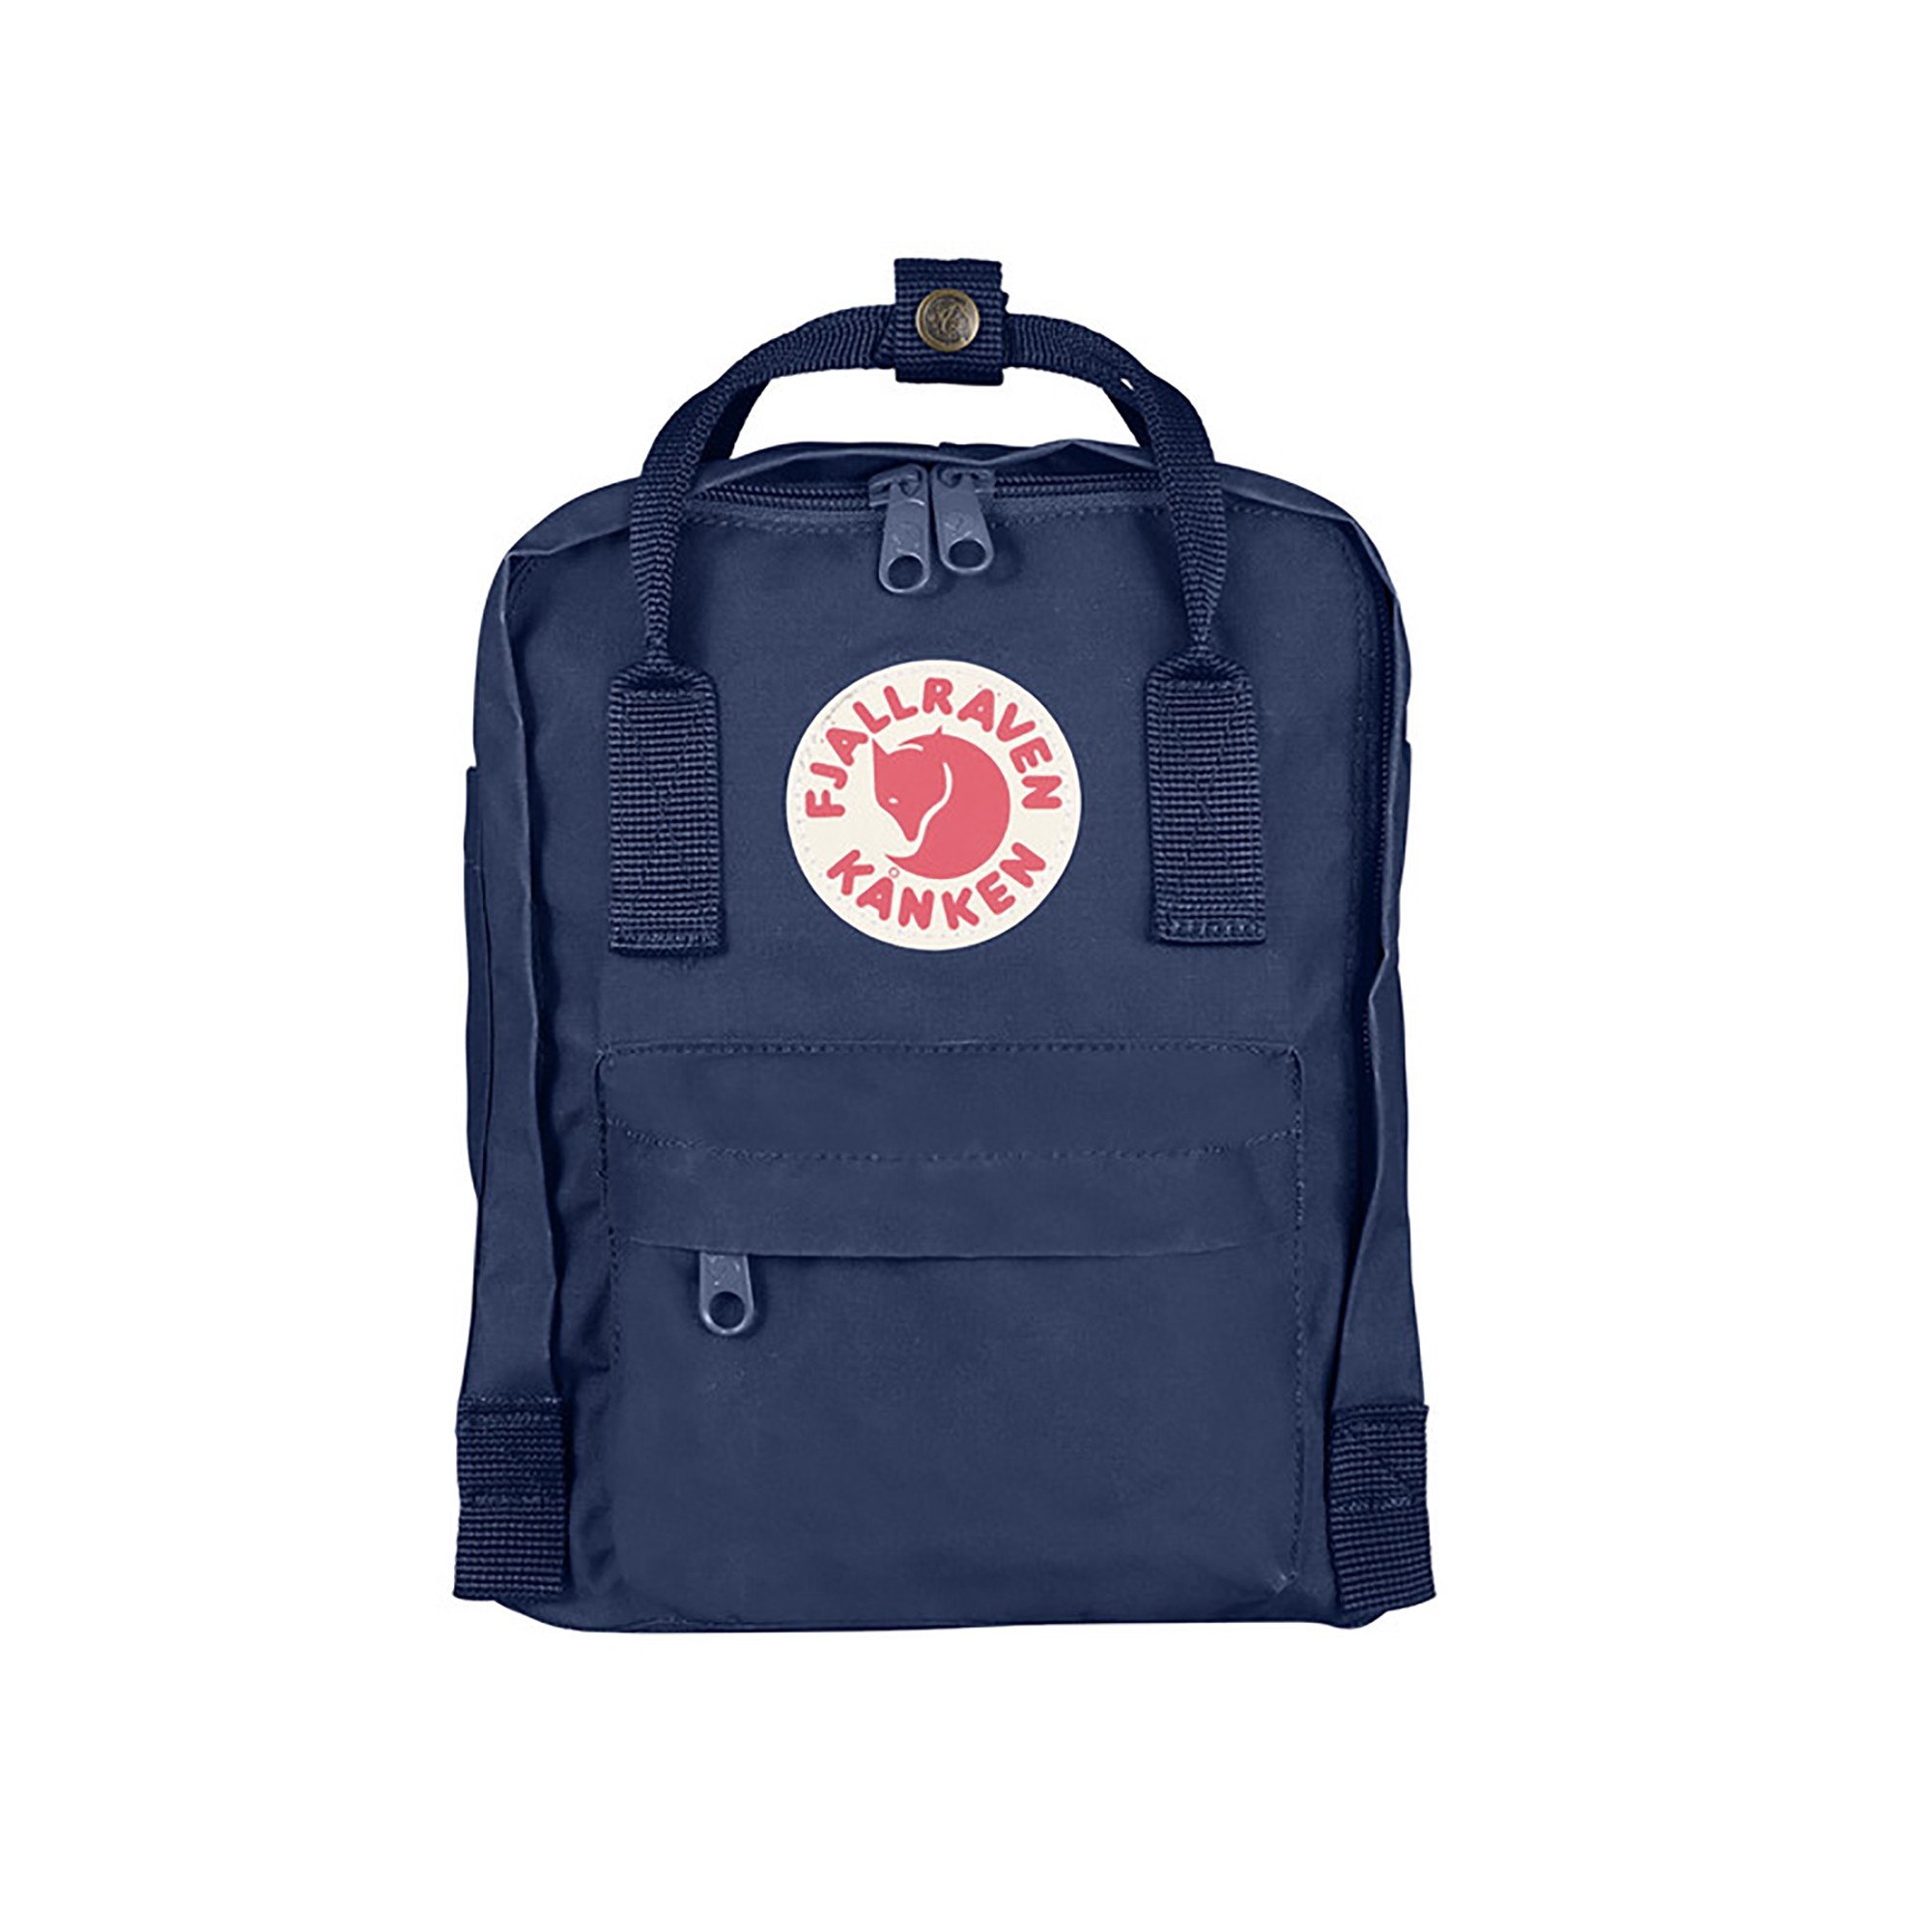 kanken-mini-backpack